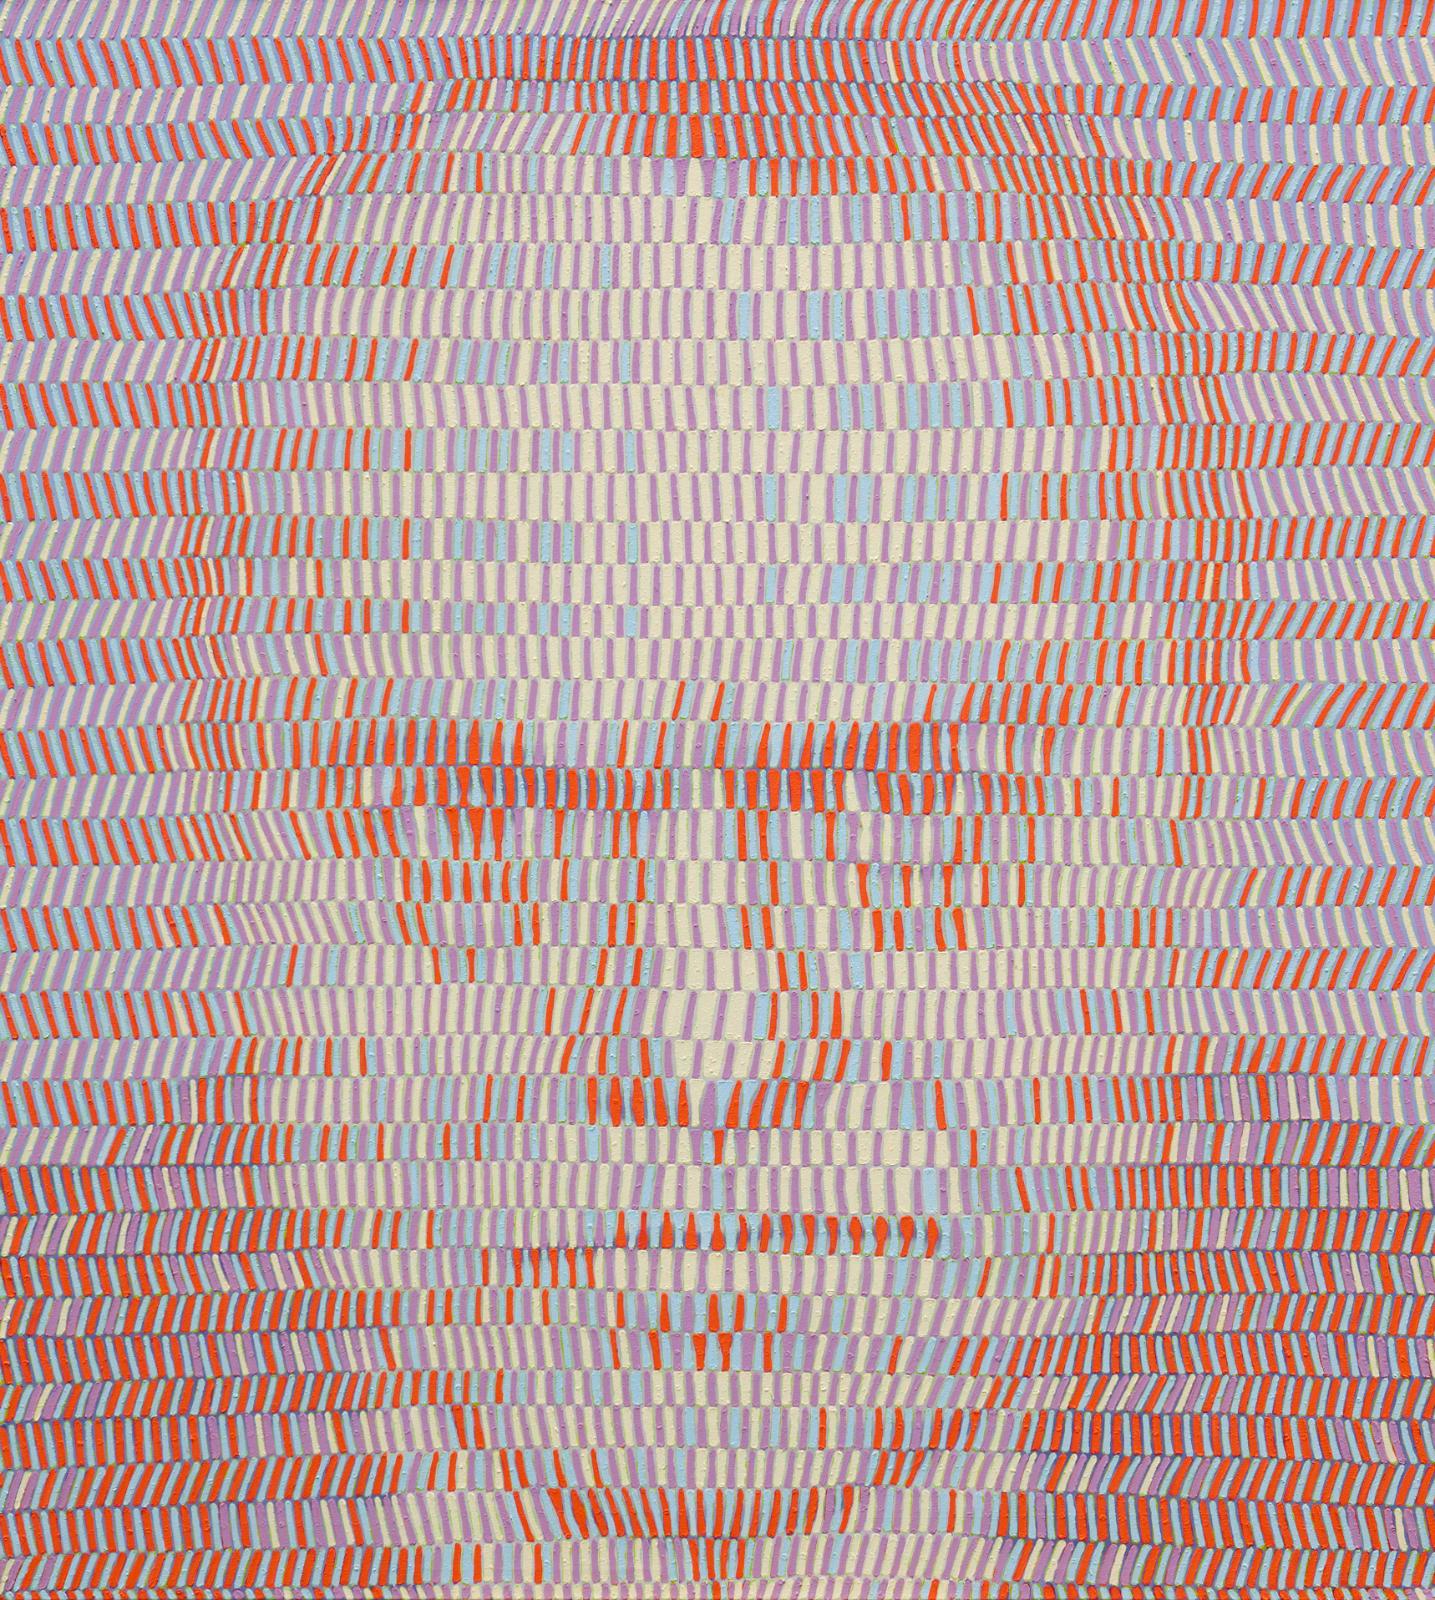 Andreas Lau, M.B. (Max Beckmann), 2015, Eitempera auf Nessel, 200 x 180 cm, laa013kü, Preis auf Anfrage